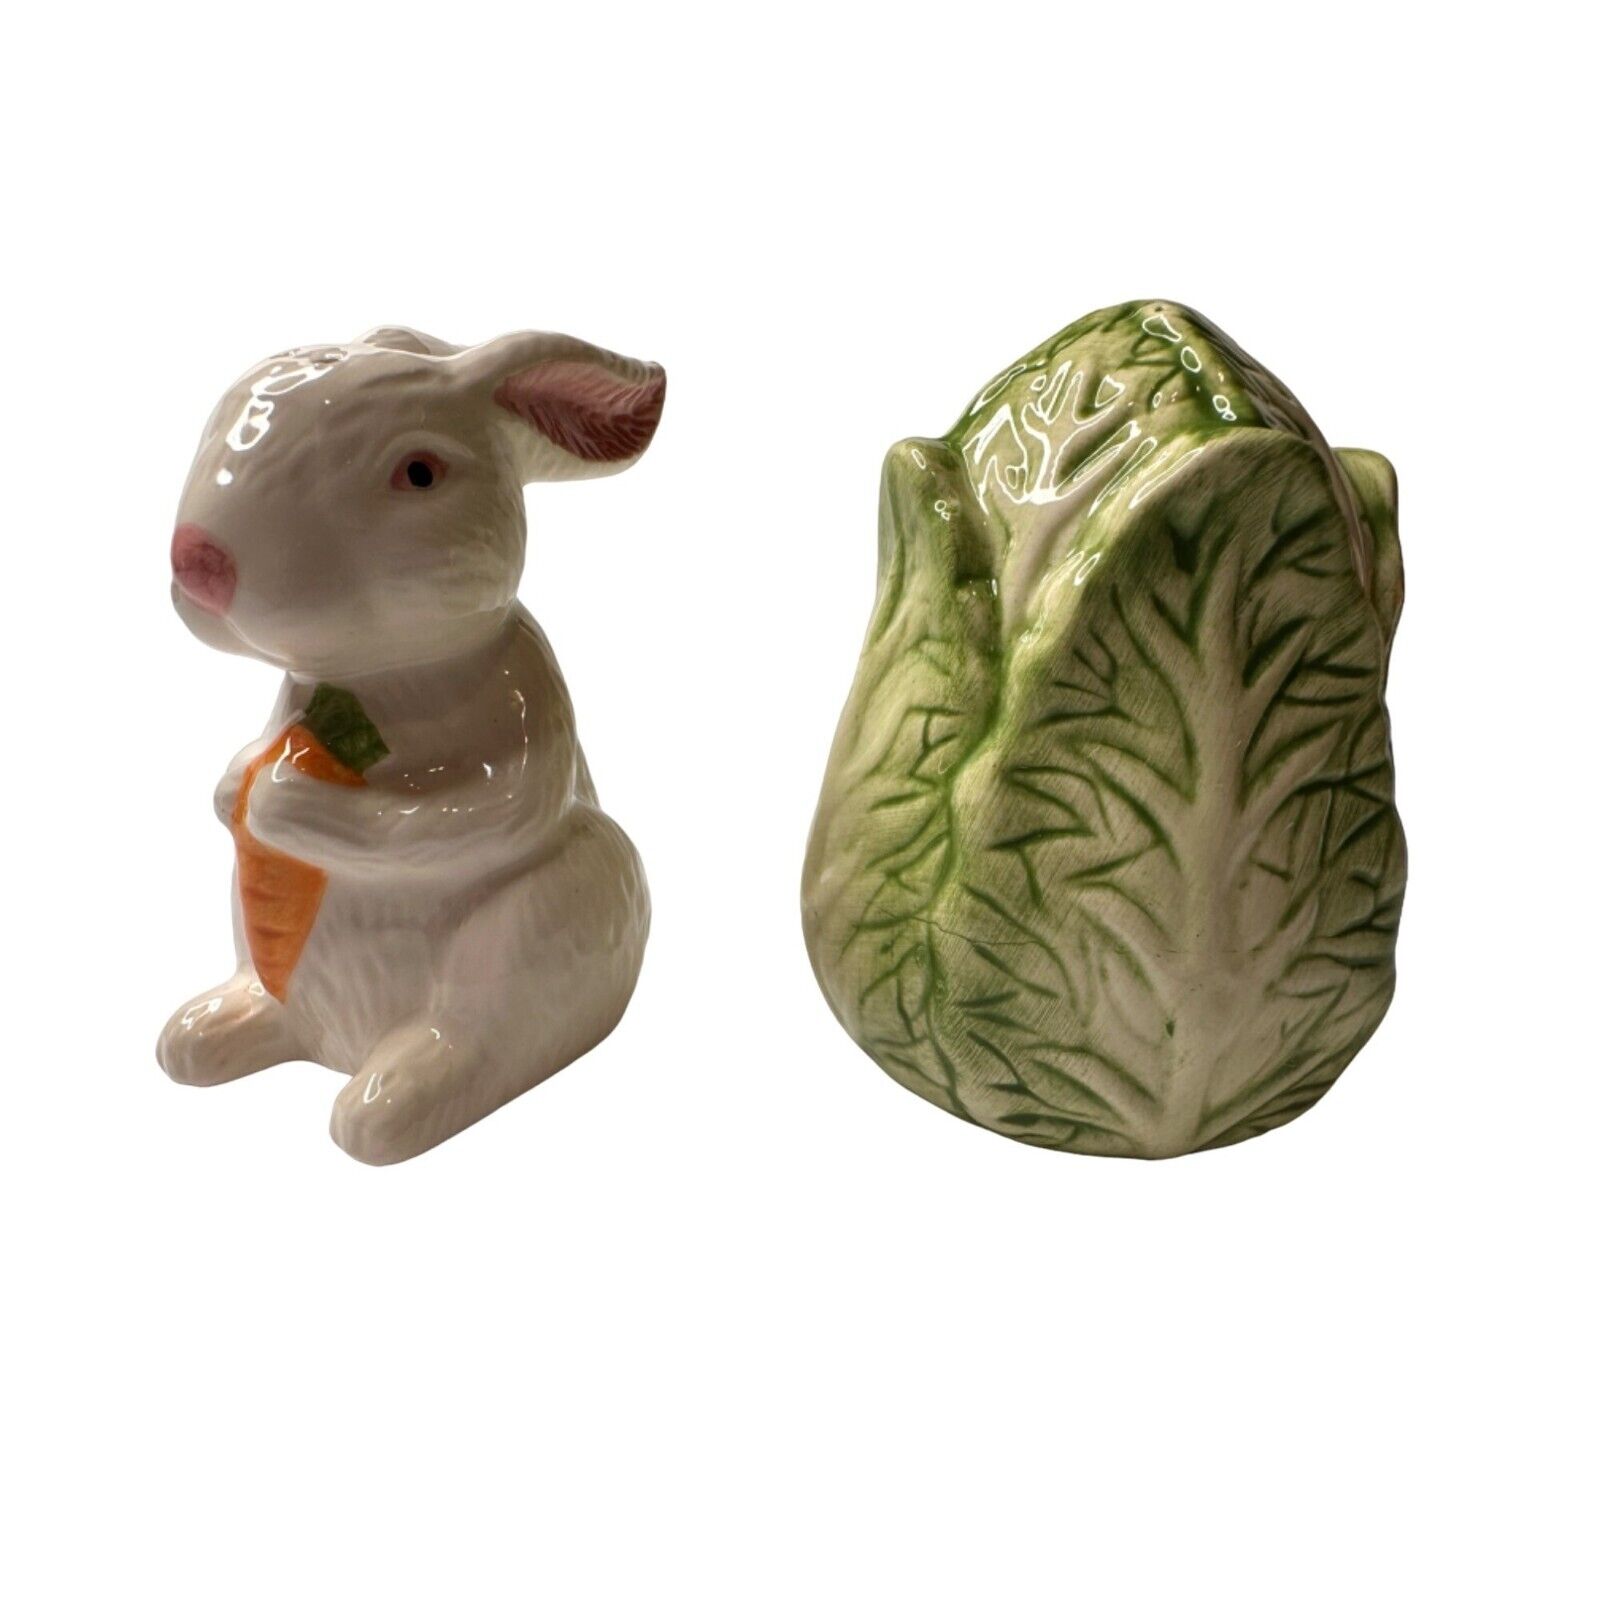 Vintage Porcelain Bunny Cabbage Springtime Salt & Pepper Shakers Original Box